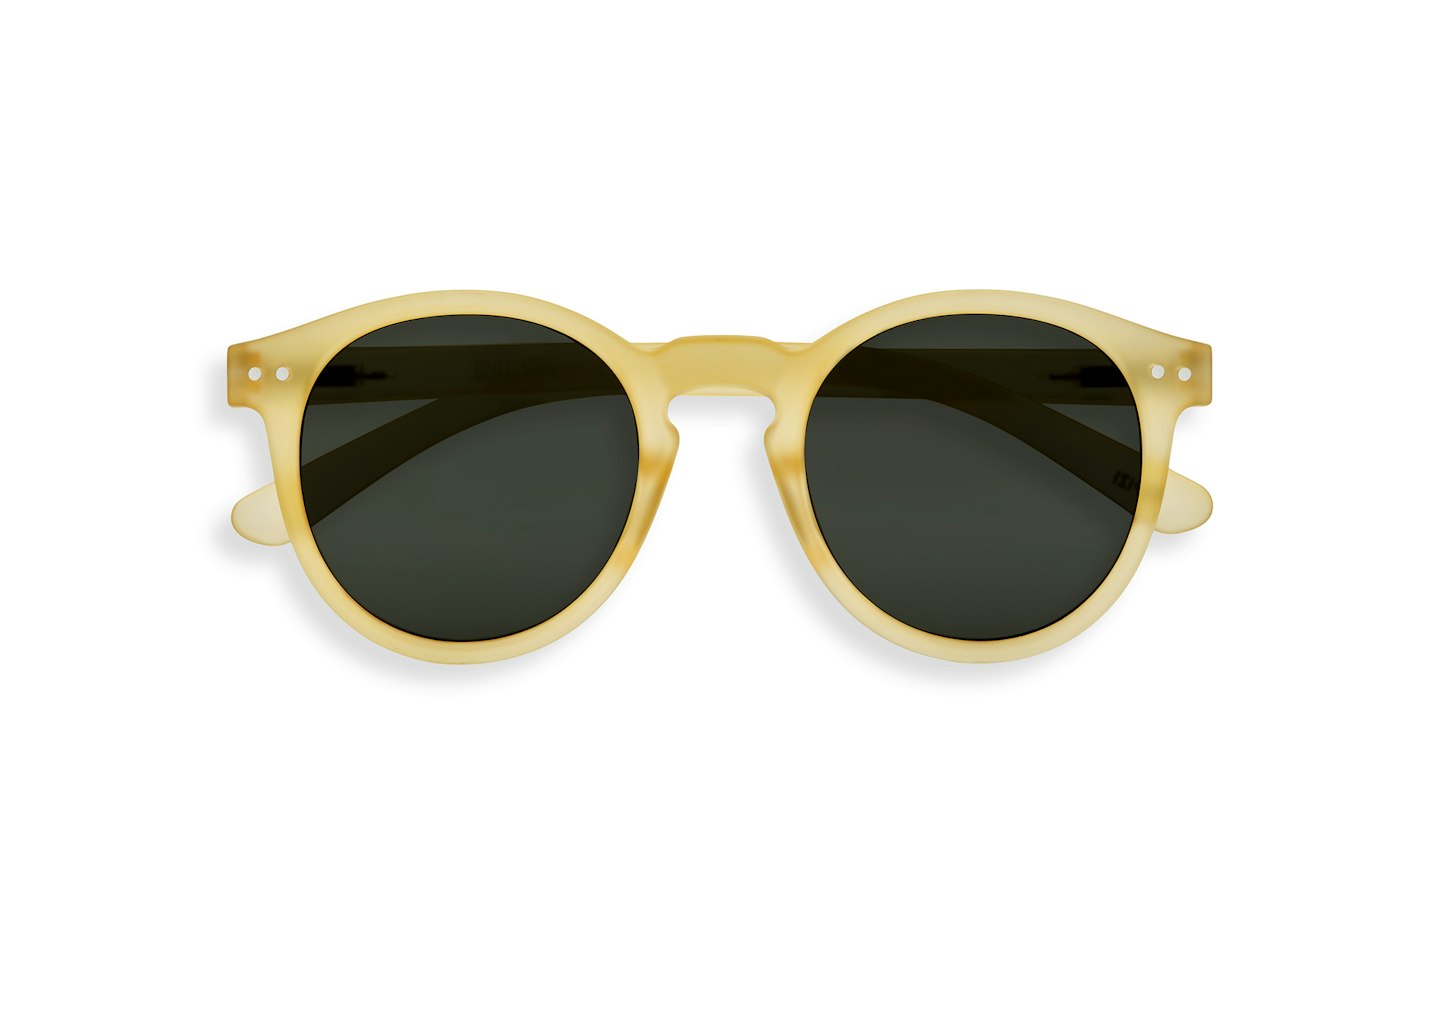 lunchtime shop Wednesday - Izipizi, #M Yellow Honey Oversized Sunglasses, £50